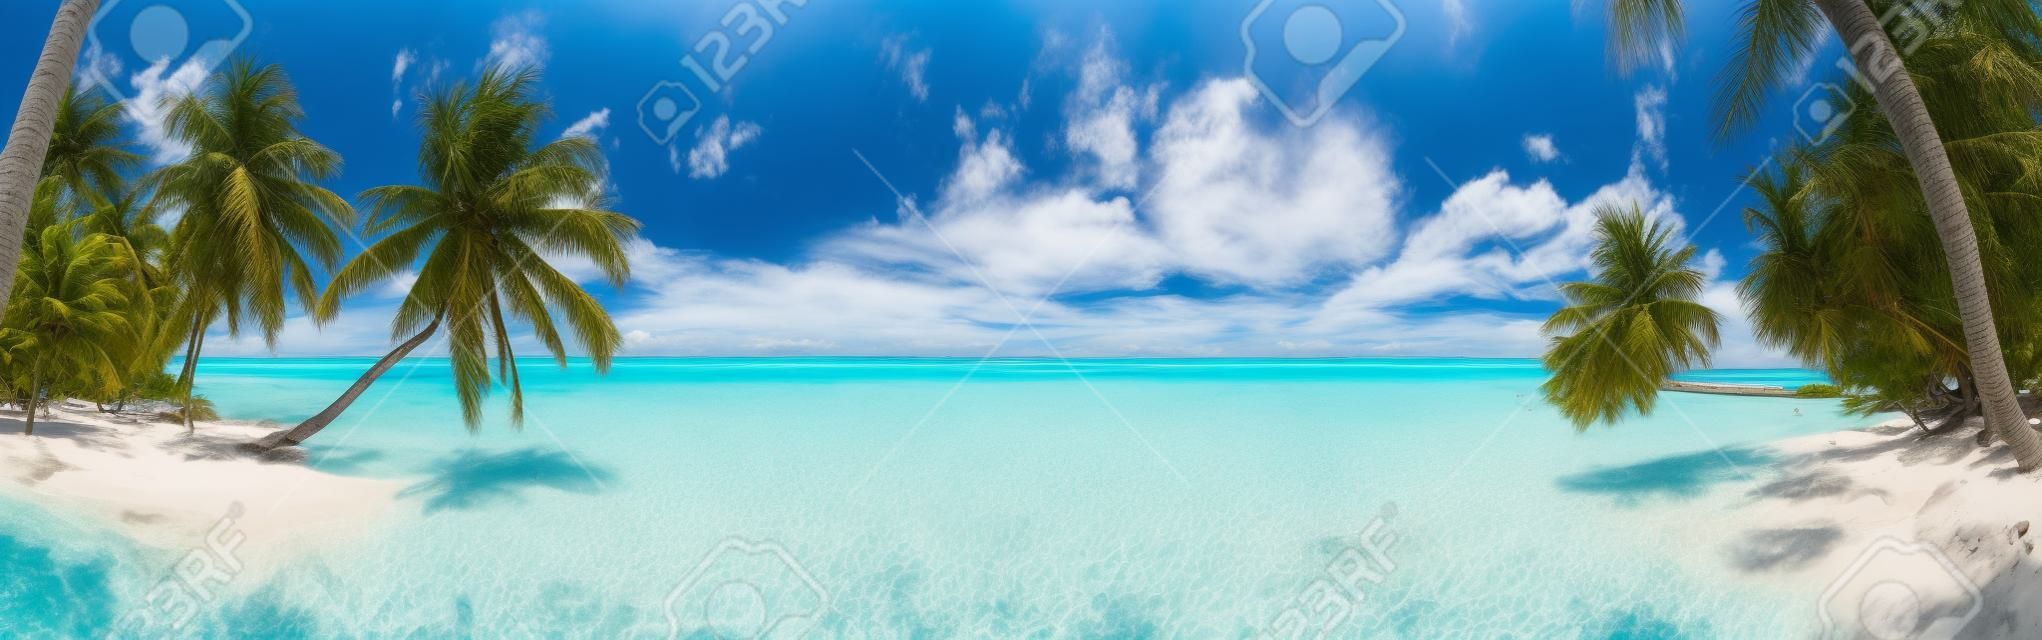 Panorama Beach alle Maldive con cielo azzurro, le palme e acqua turchese